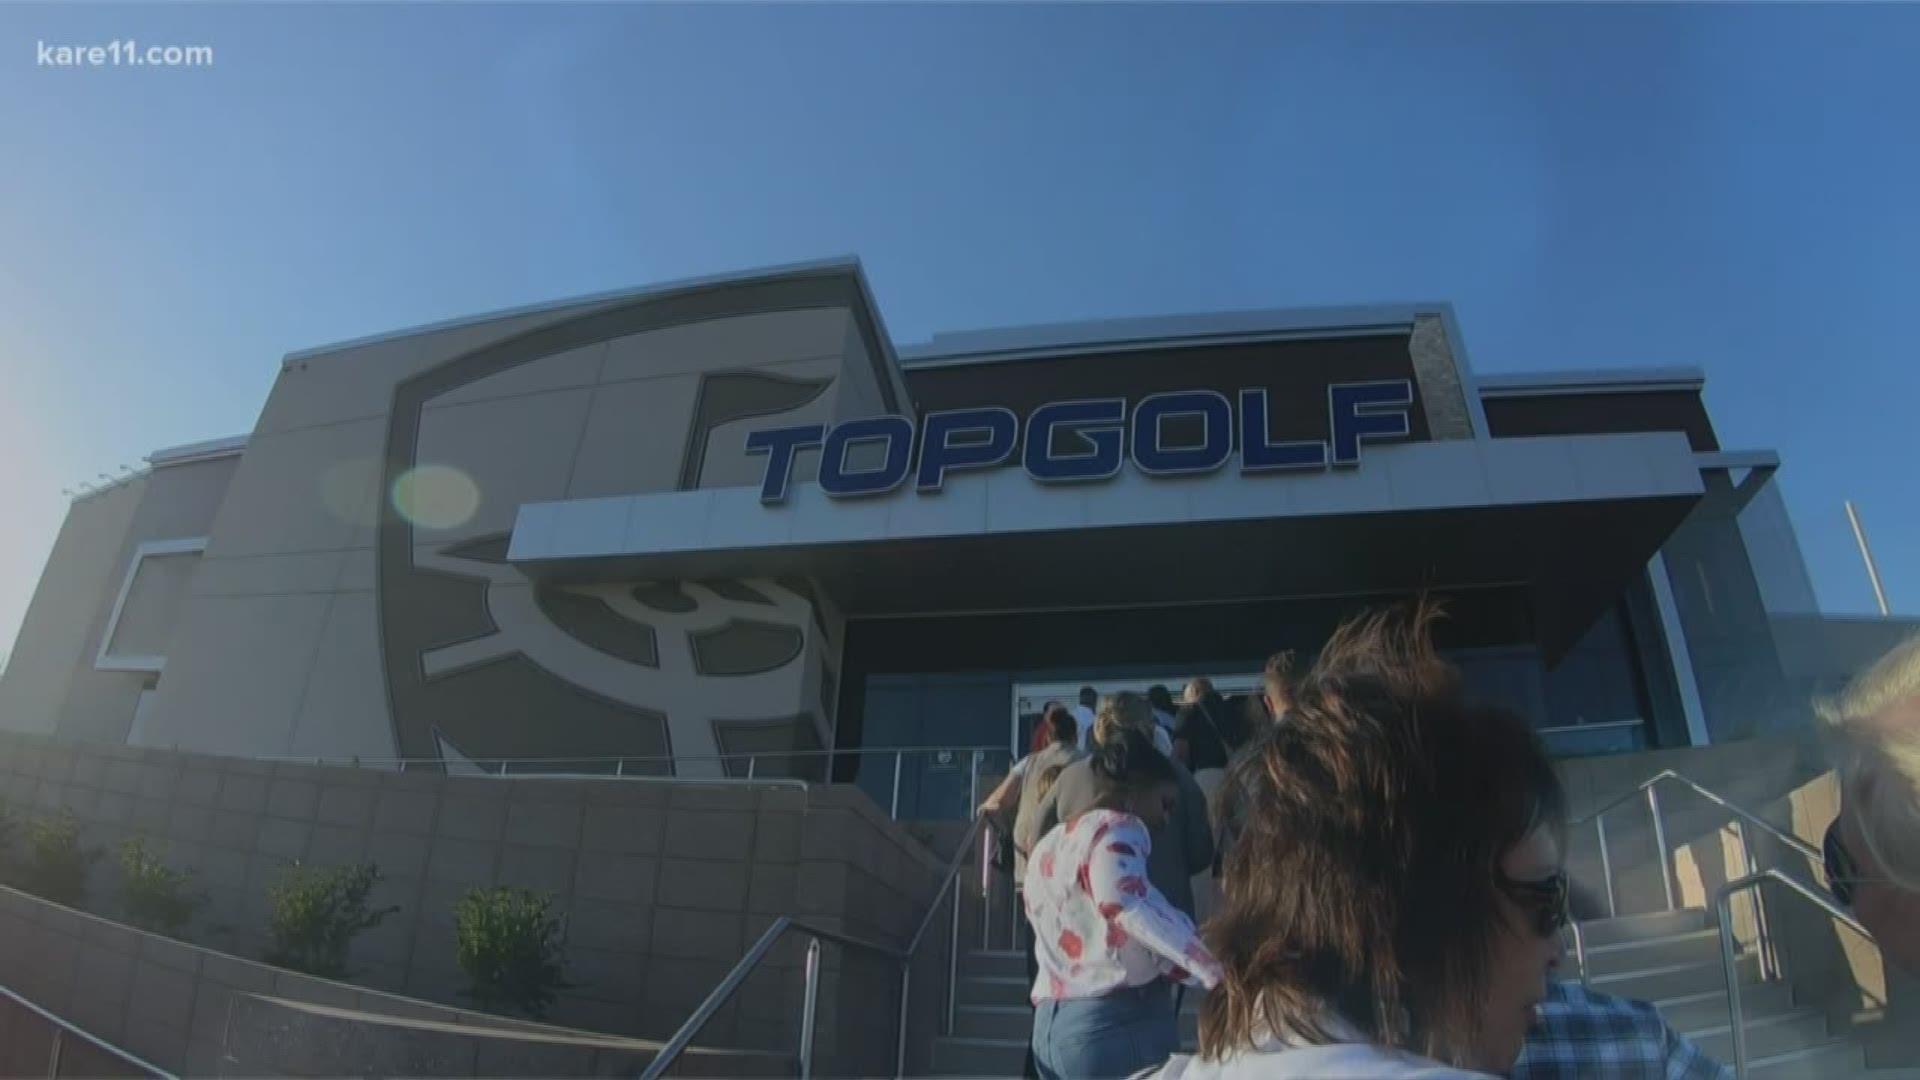 Topgolf Orlando will finally open next week, Orlando